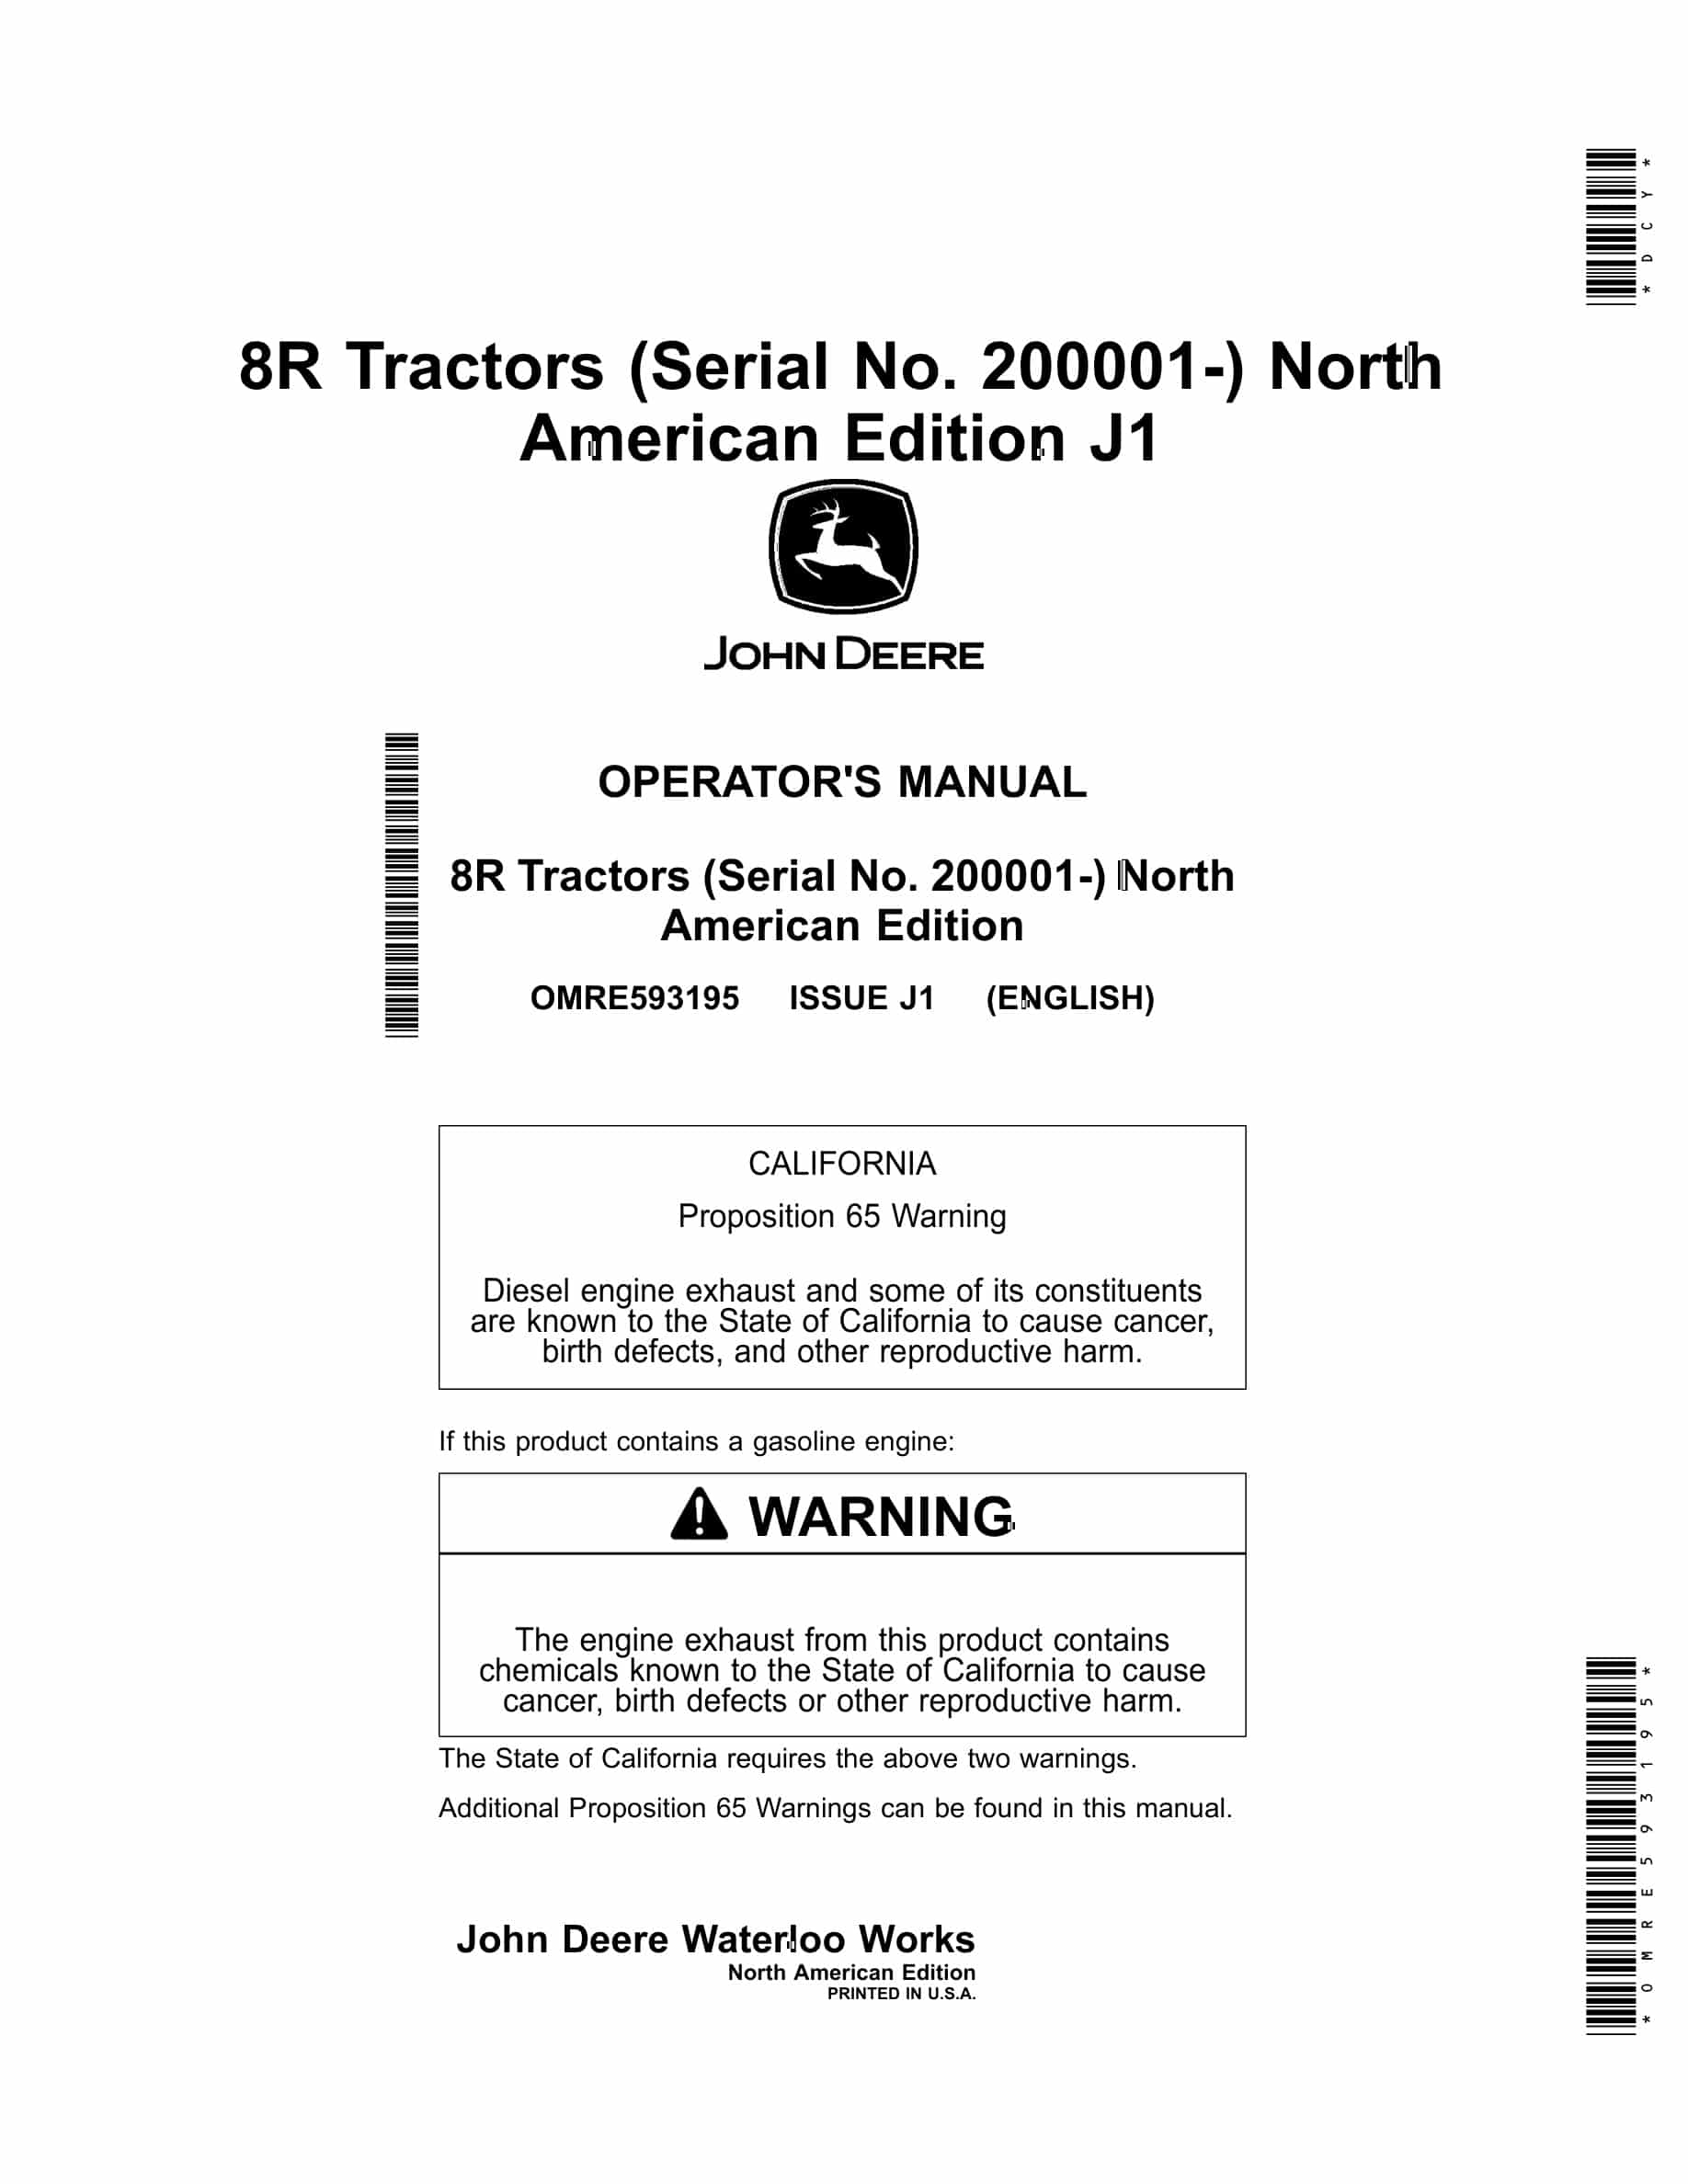 John Deere 8R Tractor Operator Manual OMRE593195-1